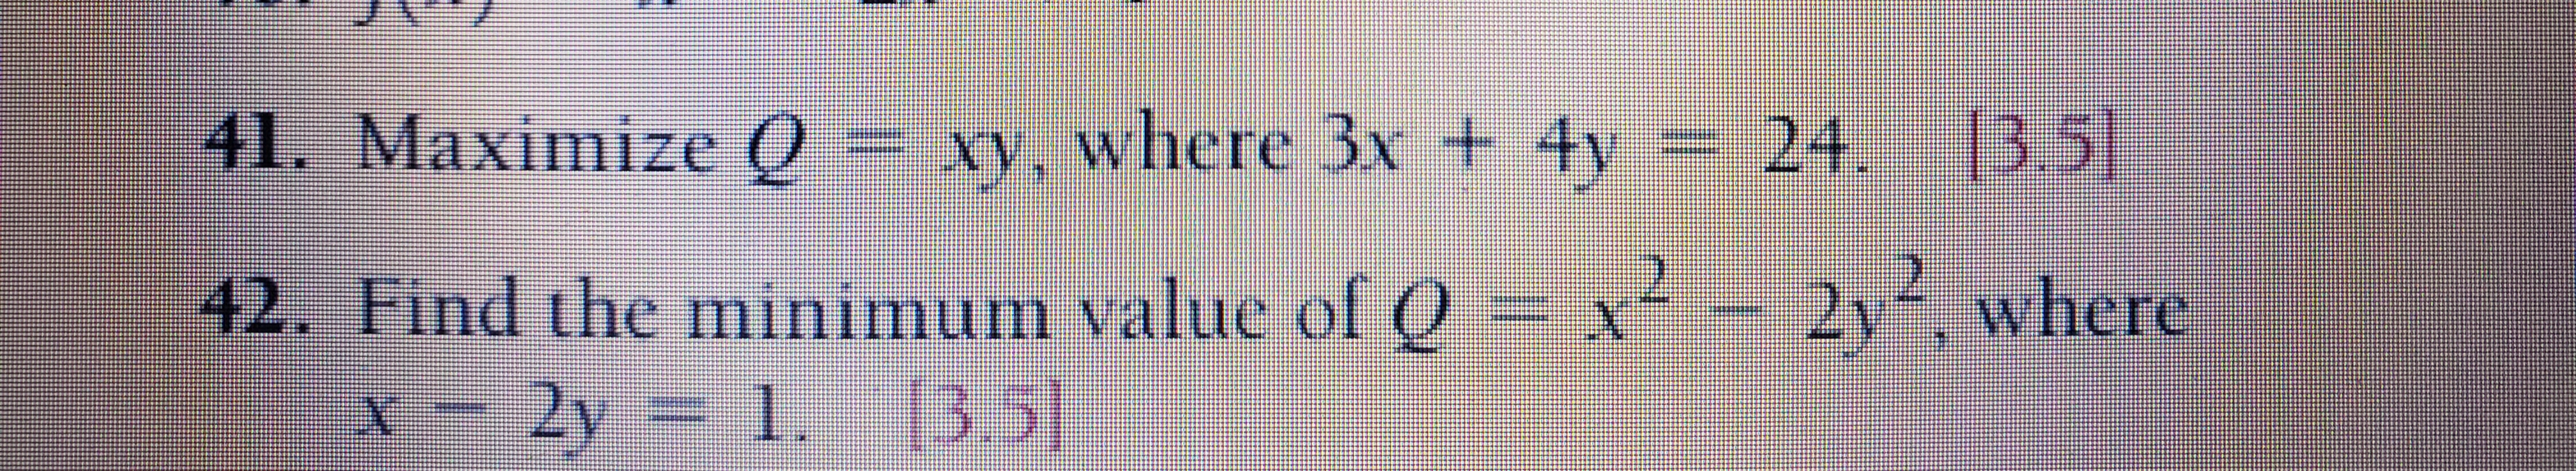 41. Maximize Q =
xy, where 3x + 4y
24. 3.5]
= x² - 2y where
42. Find the minimum value ol (O
x-2y 1. [3.5)
